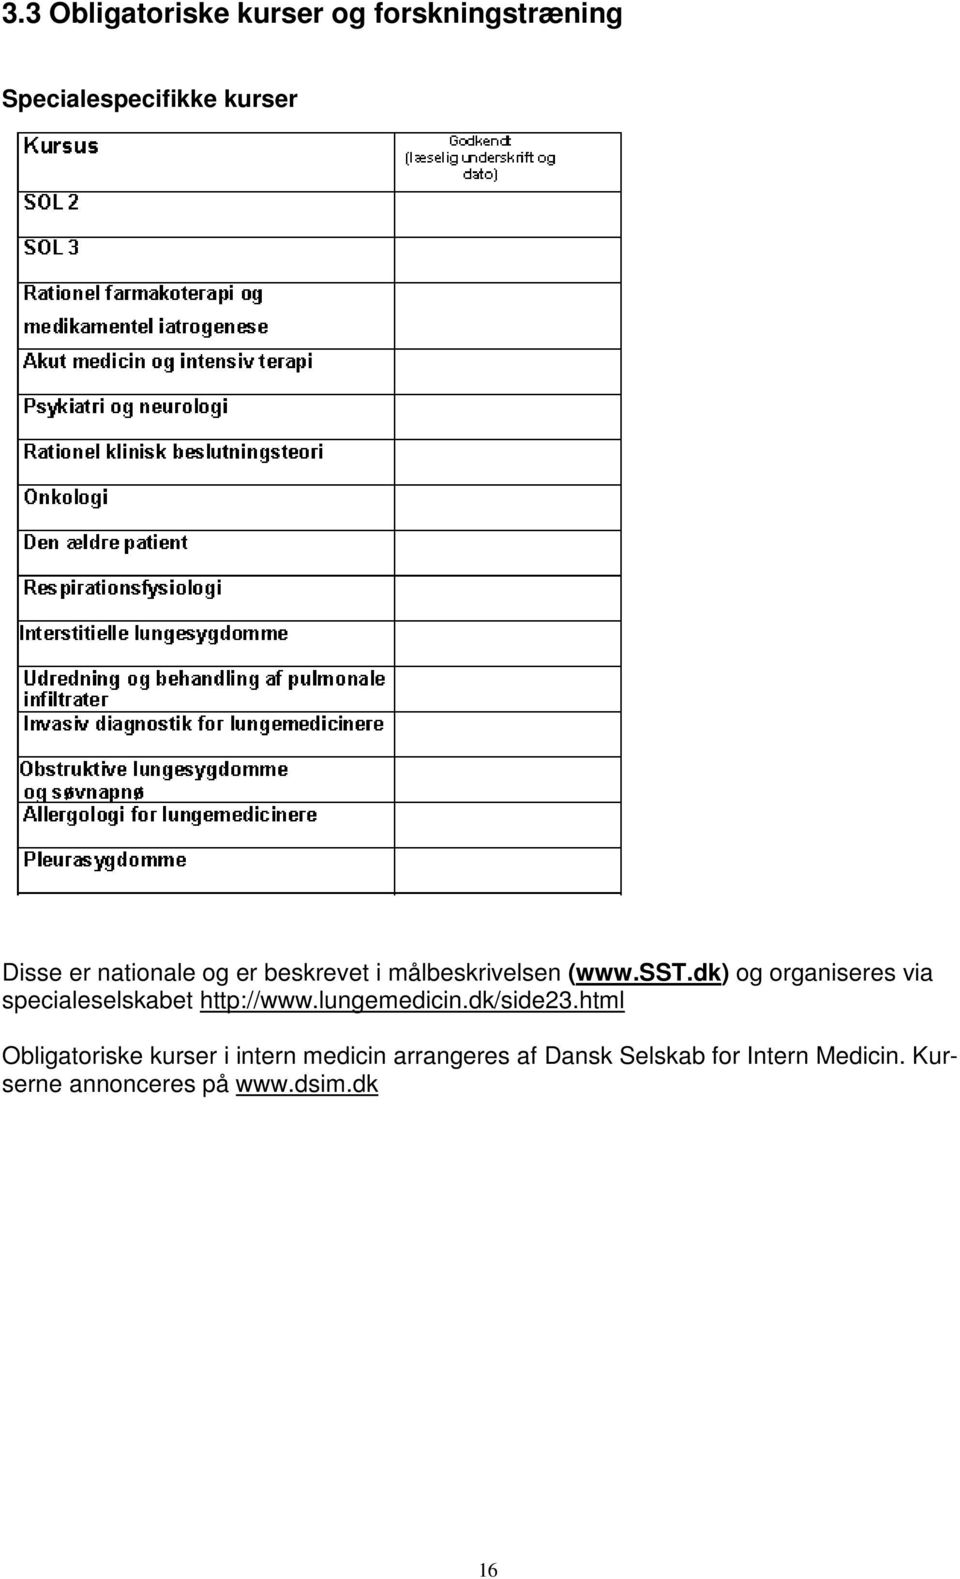 dk) og organiseres via specialeselskabet http://www.lungemedicin.dk/side23.